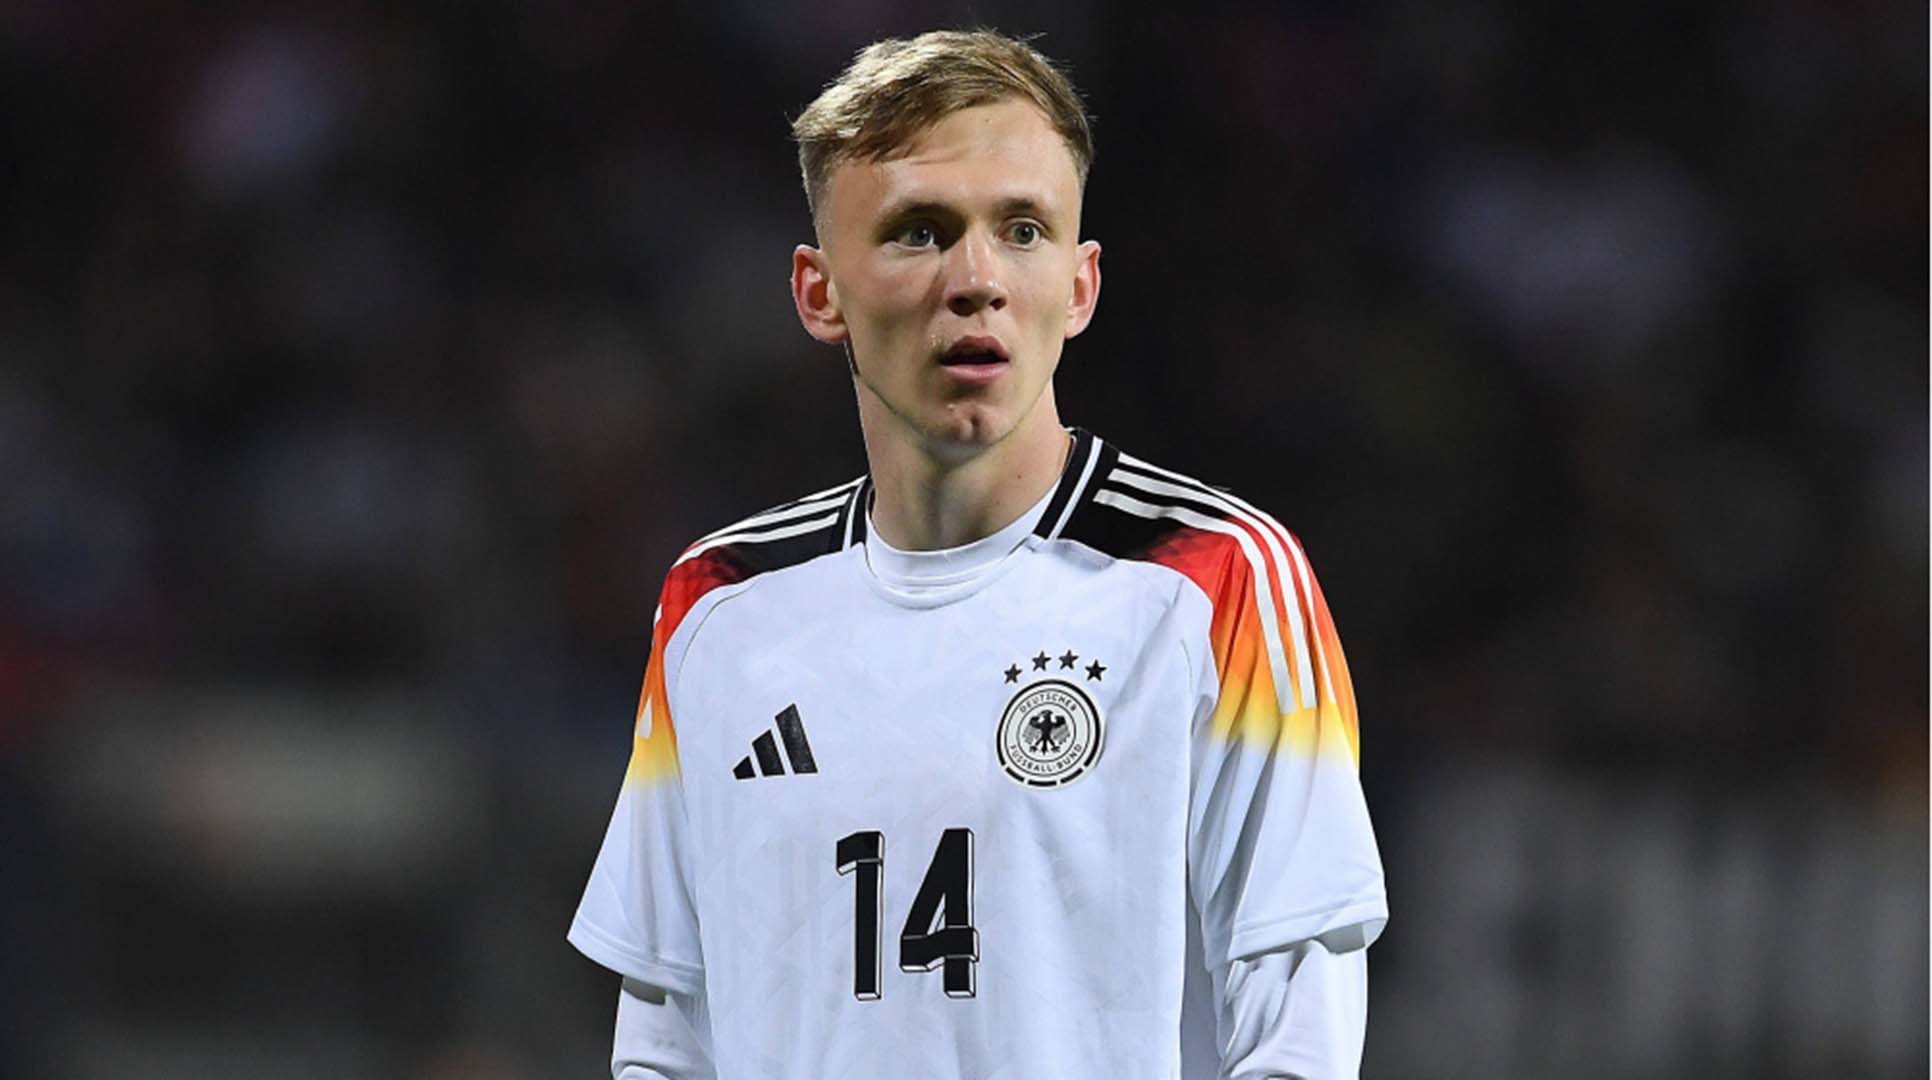 Tiền đạo trẻ Maximilian Beier được coi là làn gió mới trong số những trung phong truyền thống tại đội tuyển Đức. Ảnh: Transfermarkt.